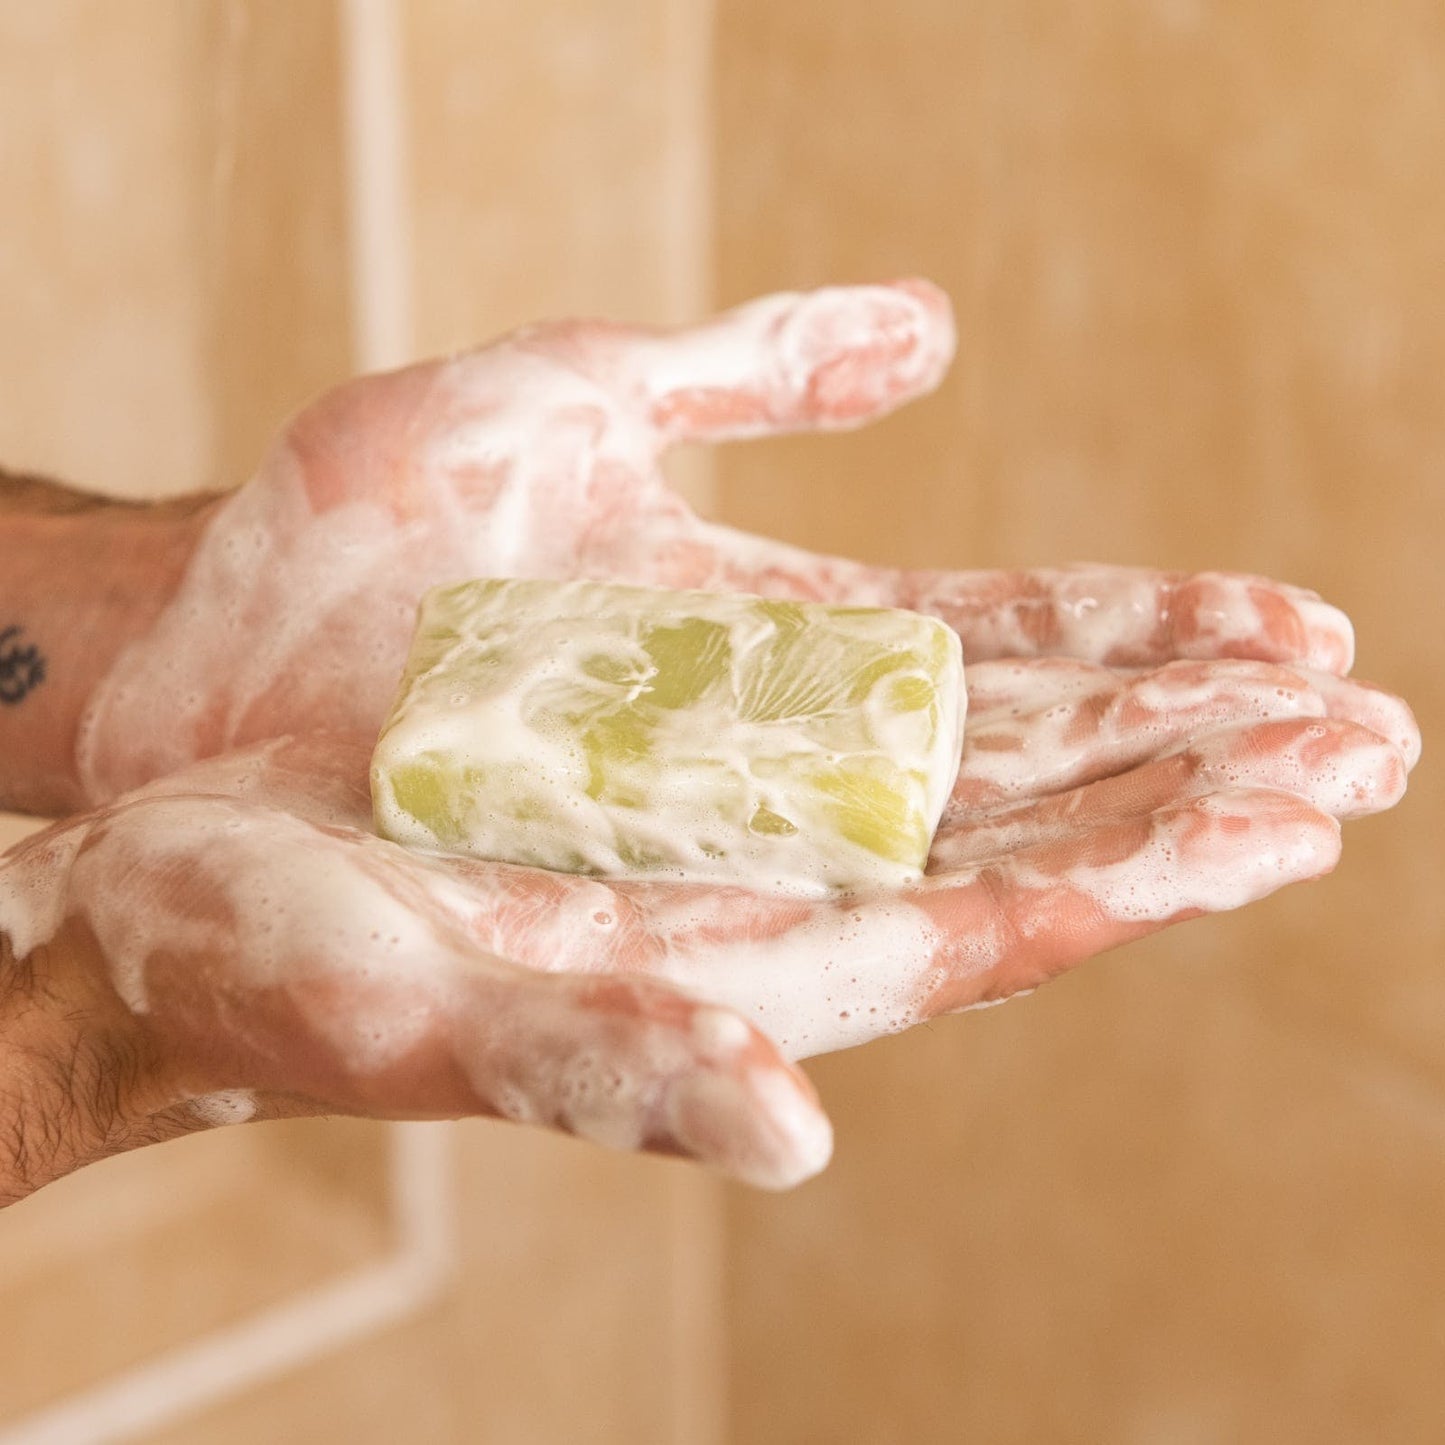 Shower Blocks Unscented Solid Shower Gel Bar - Plastic Free, Vegan & Natural